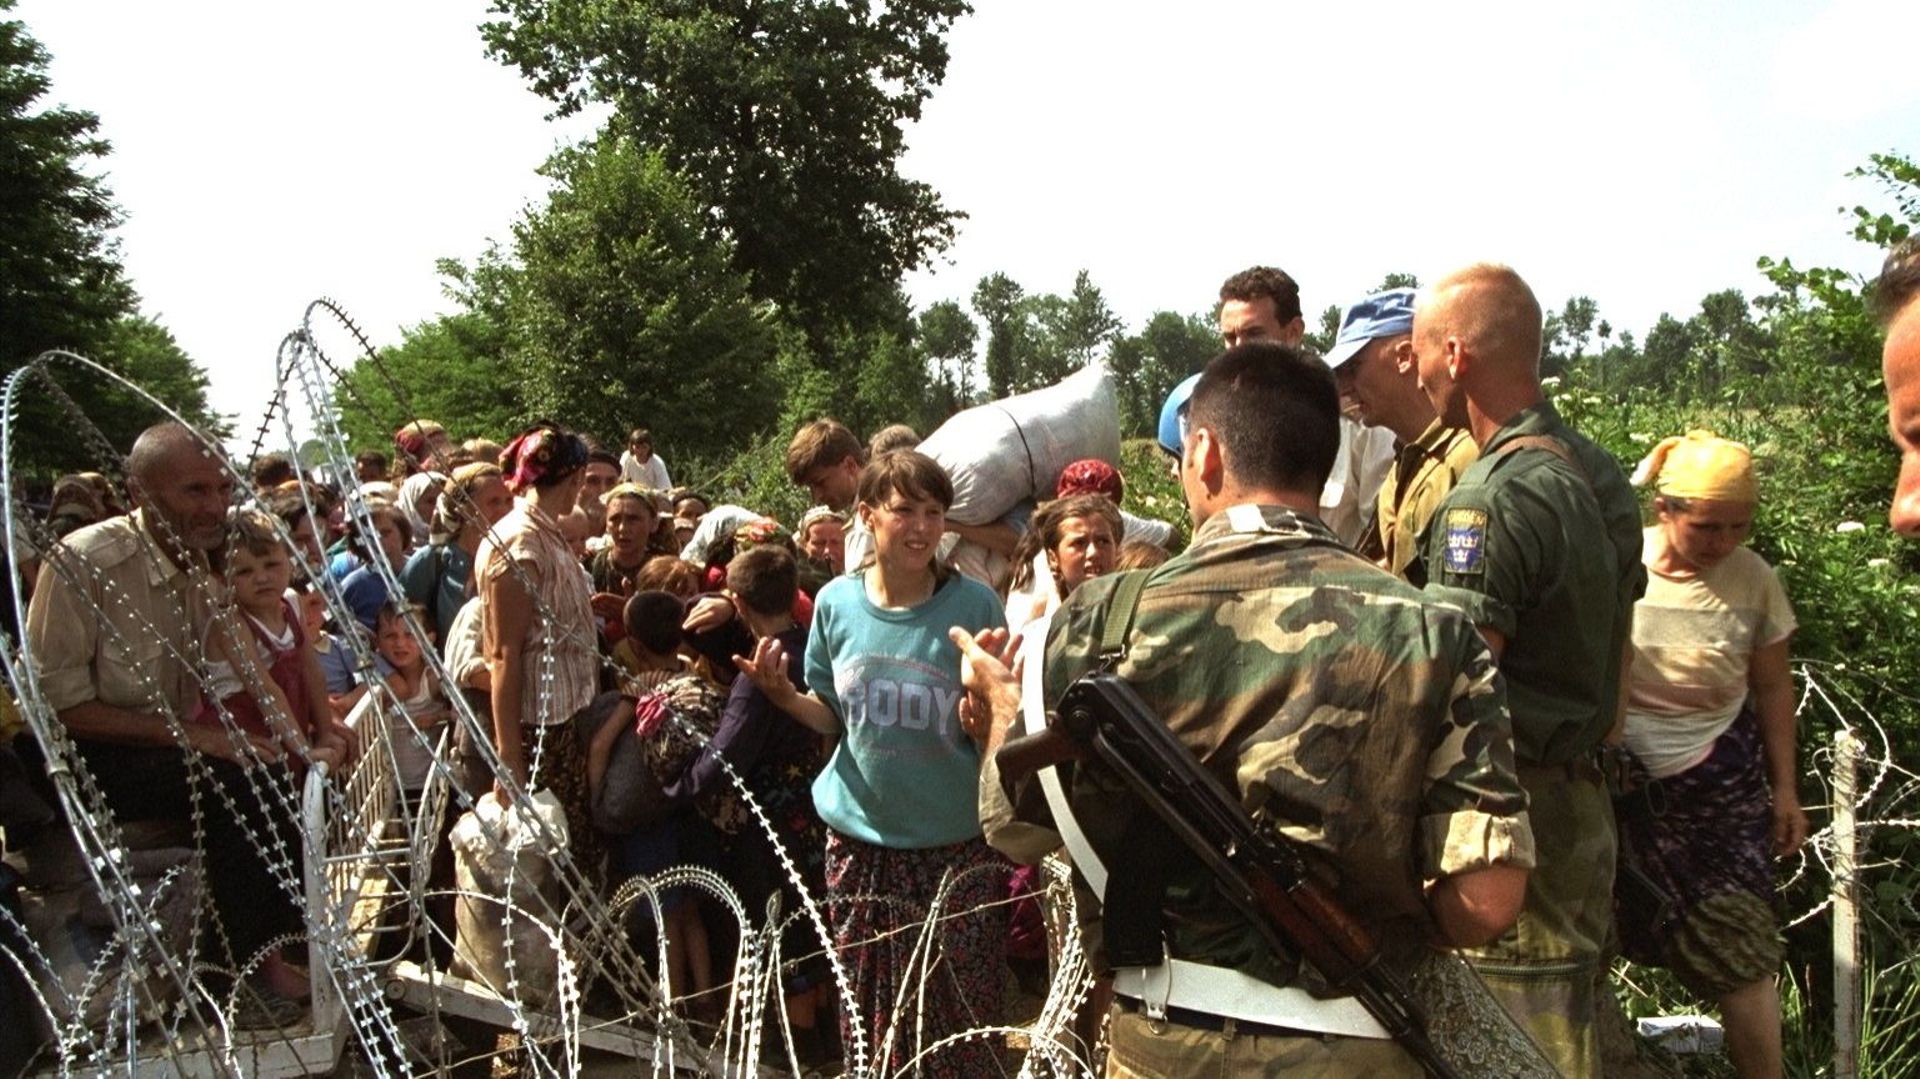 Srebrenica, quelques heures avant le massacre ciblé des hommes et garçons musulmans, la population implore les Casques bleus de les protéger.